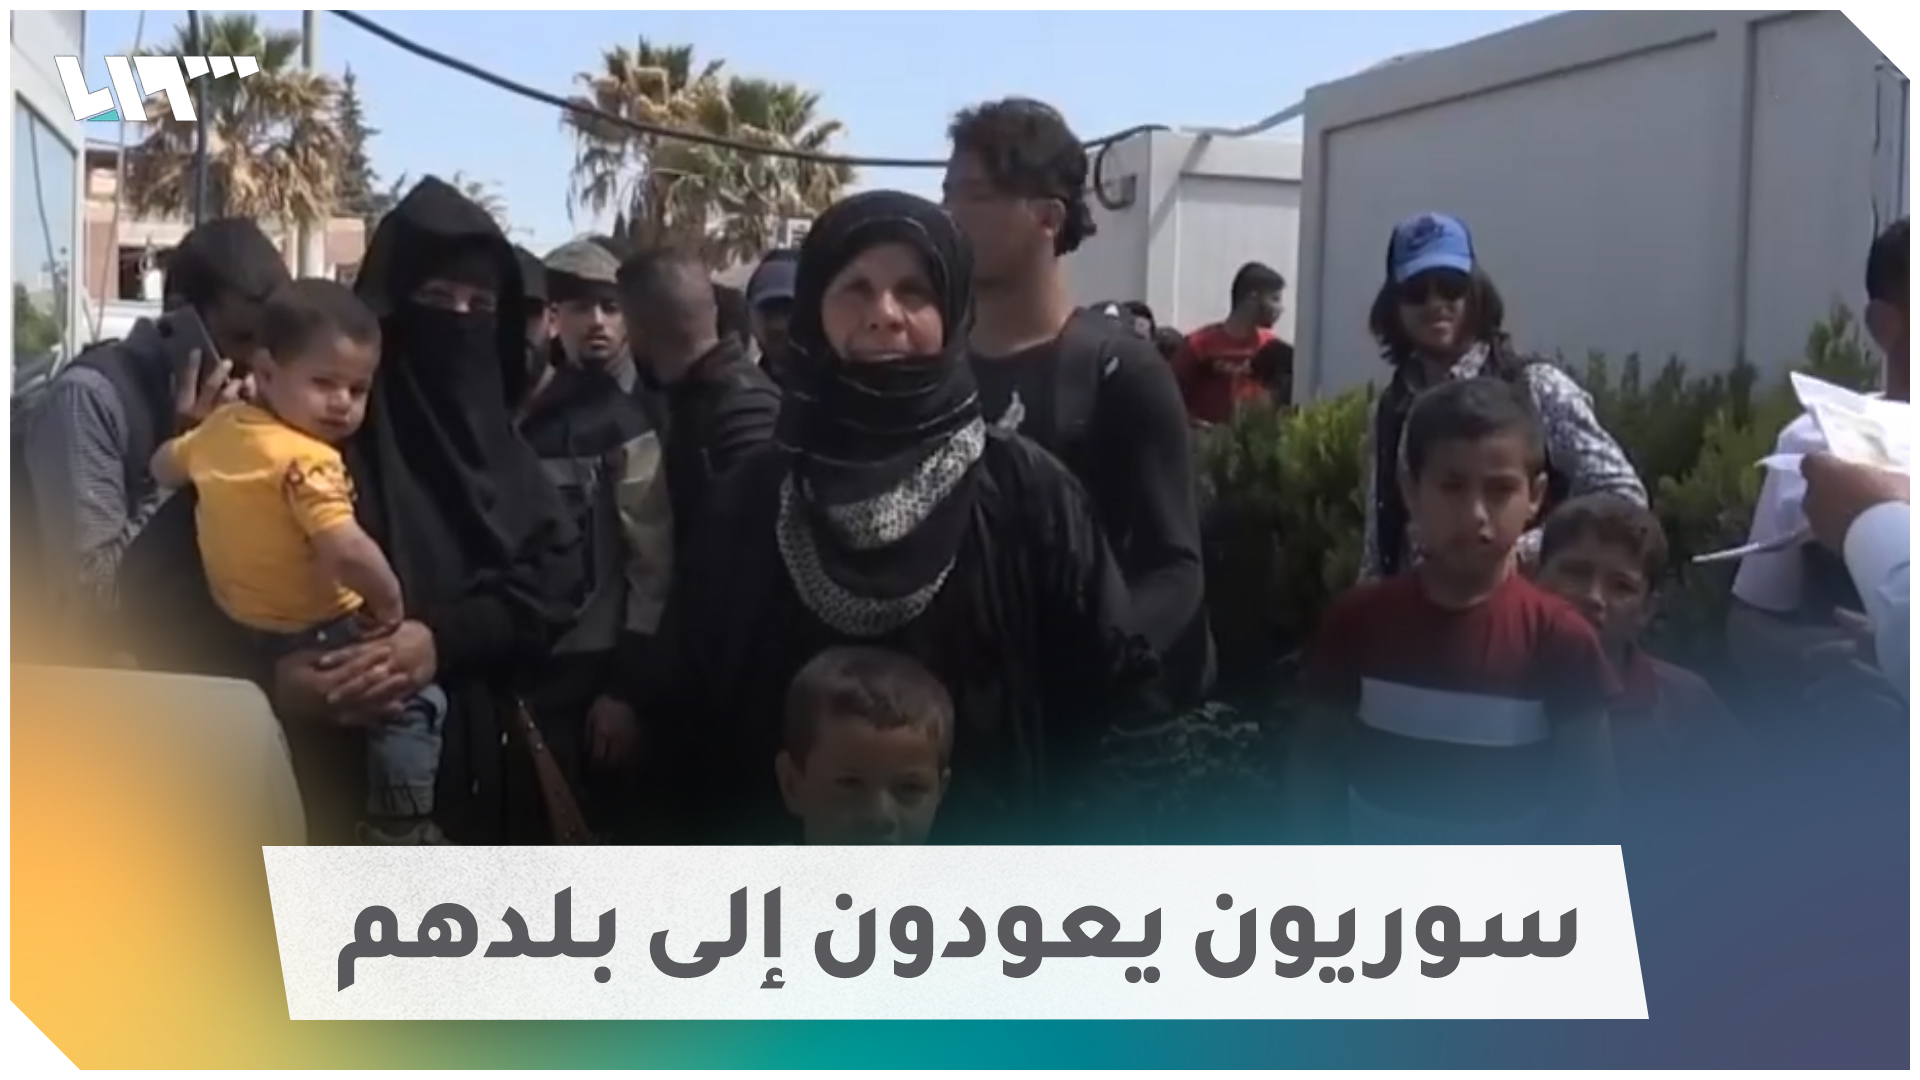 مقطع فيديو يُظهر عودة سوريين "طوعاً" إلى بلادهم